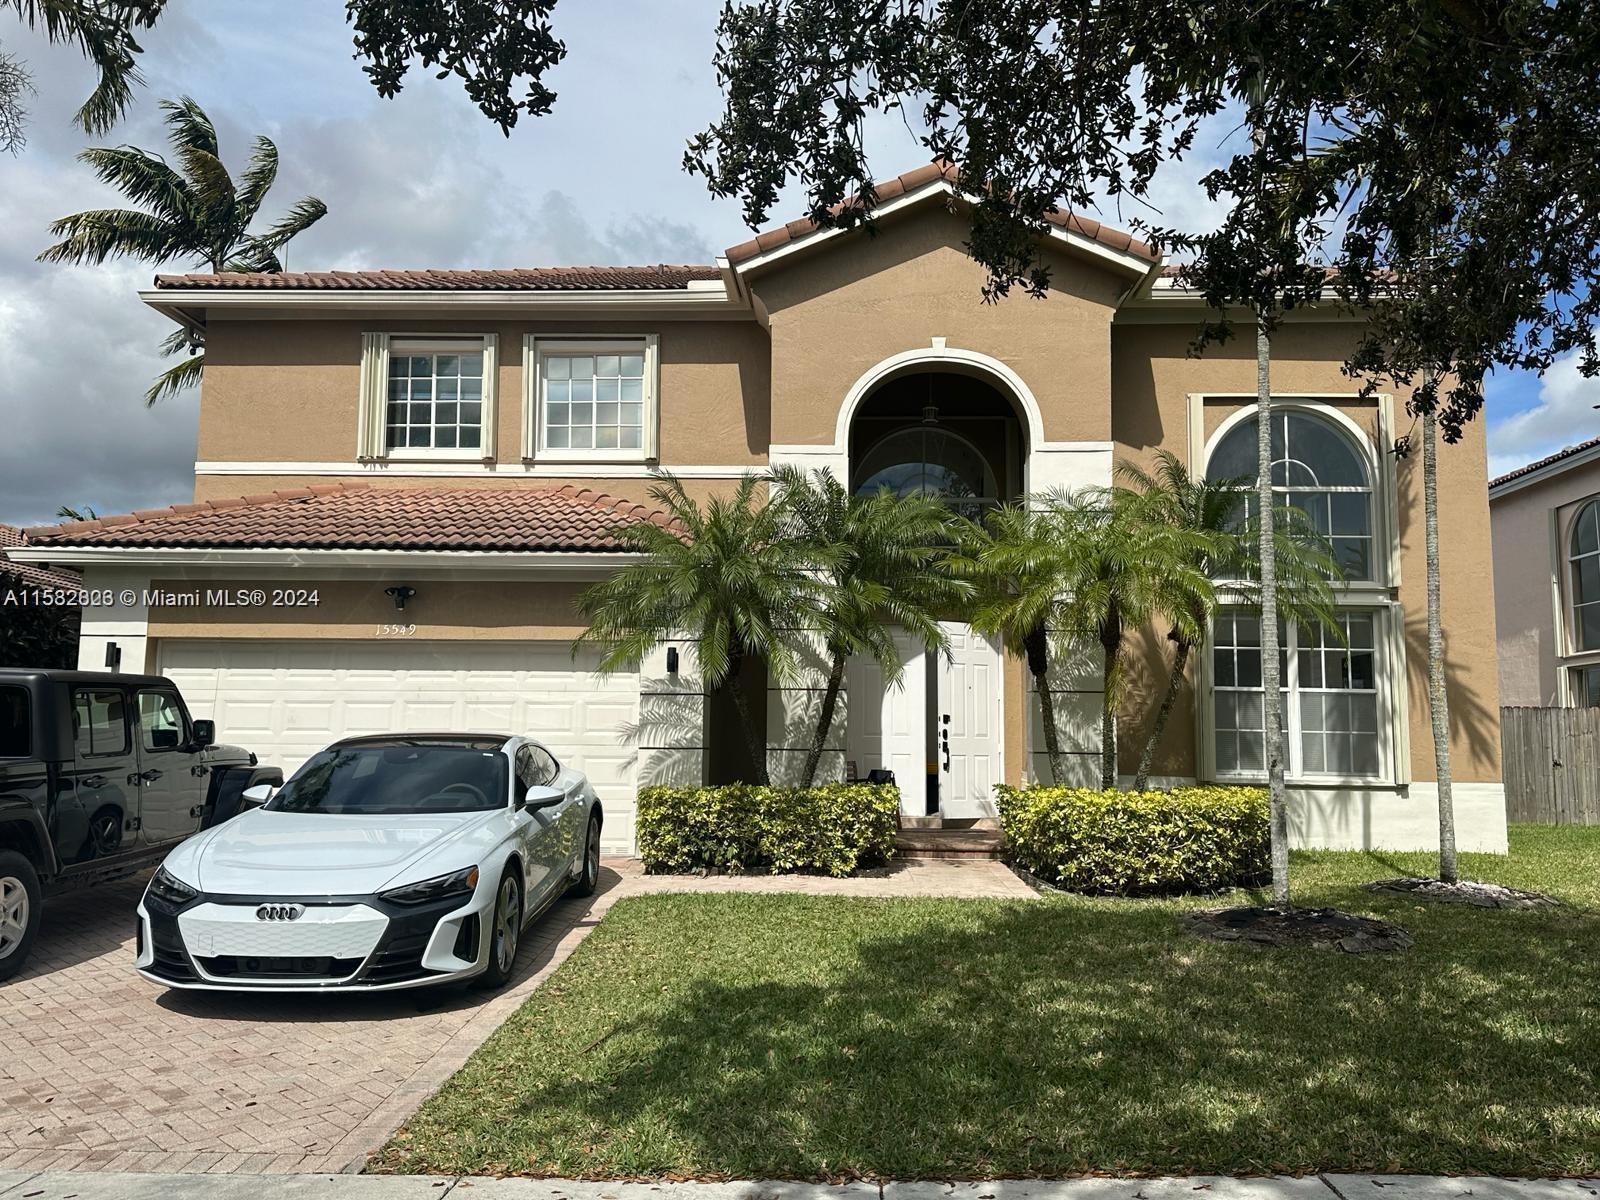 View Miami, FL 33196 house